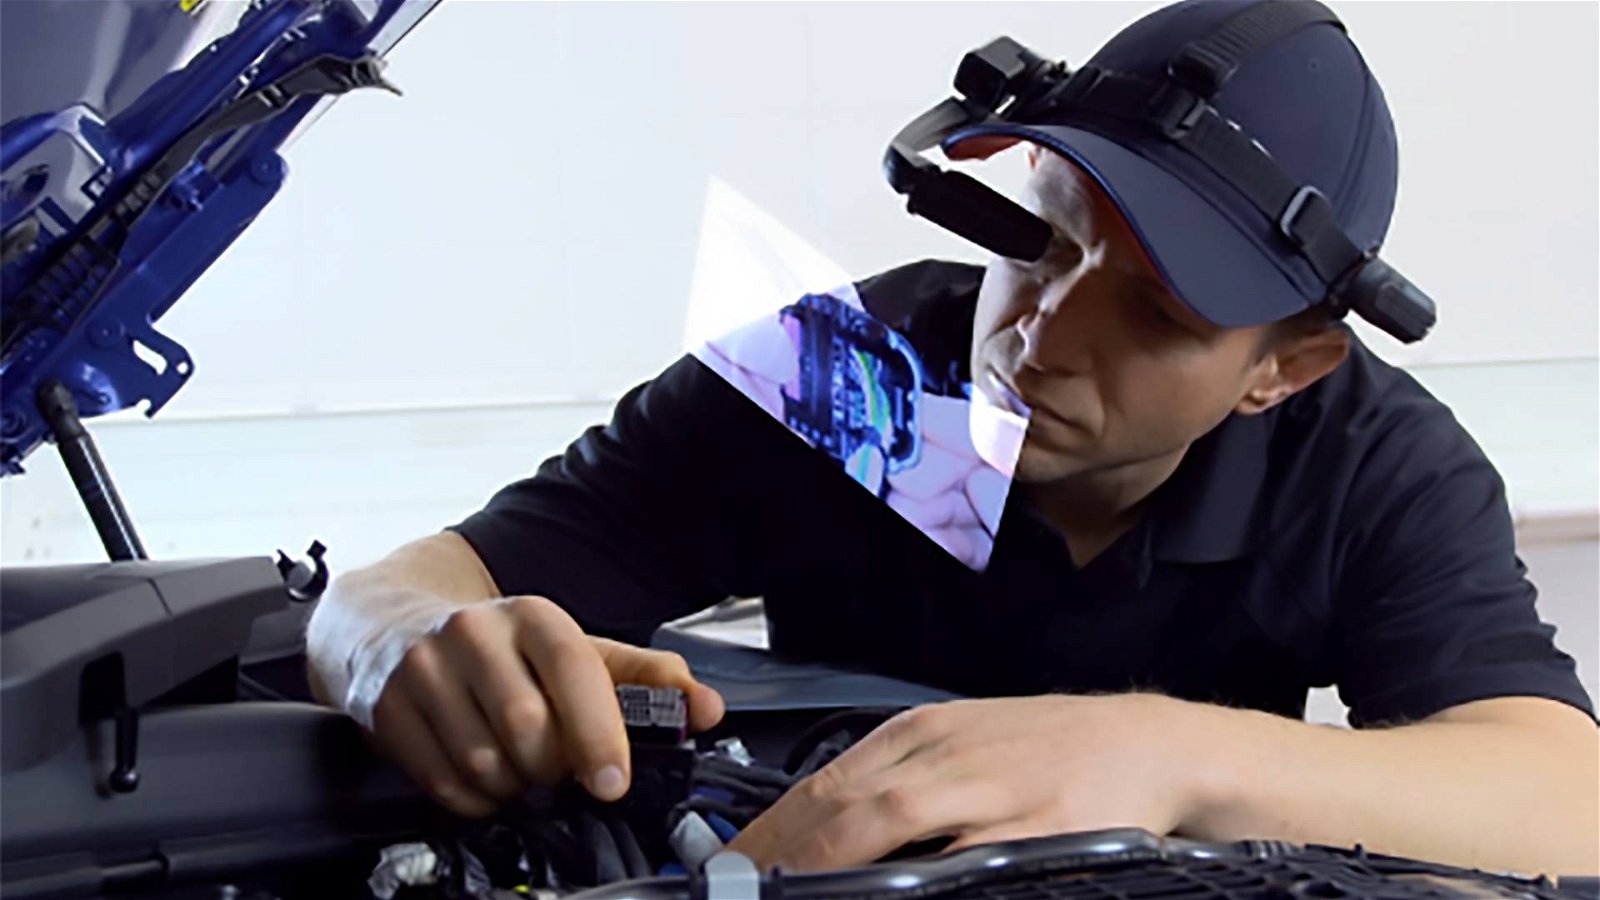 Immagine di BMW, visori a realtà aumentata per velocizzare il lavoro dei meccanici